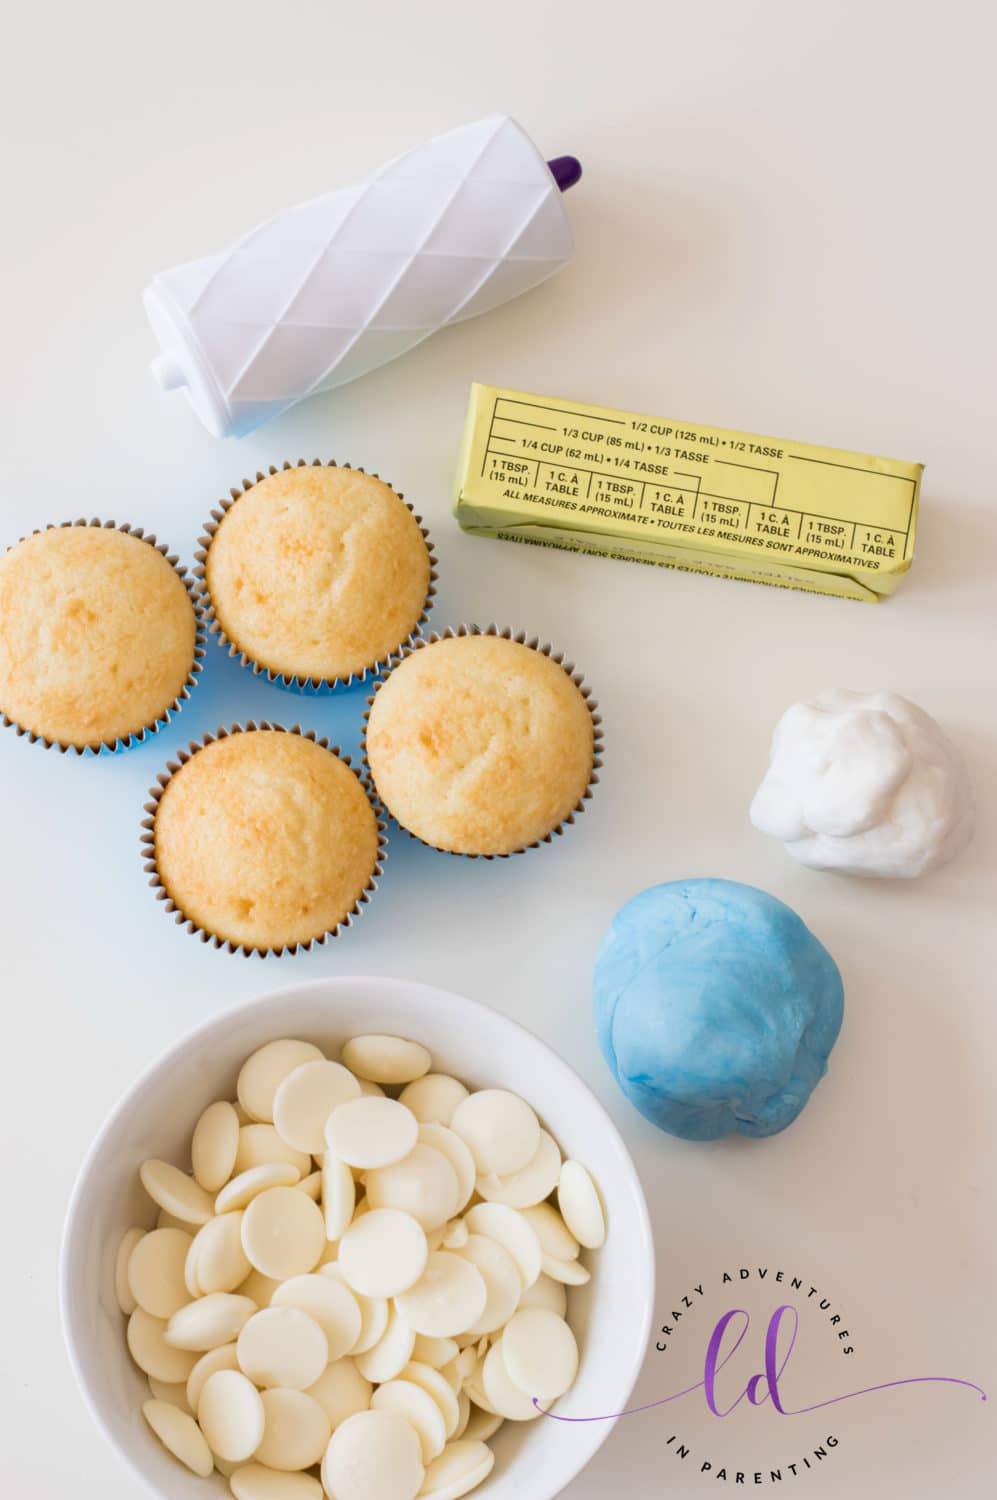 Ingredients to Make Elsa Frozen Cupcakes